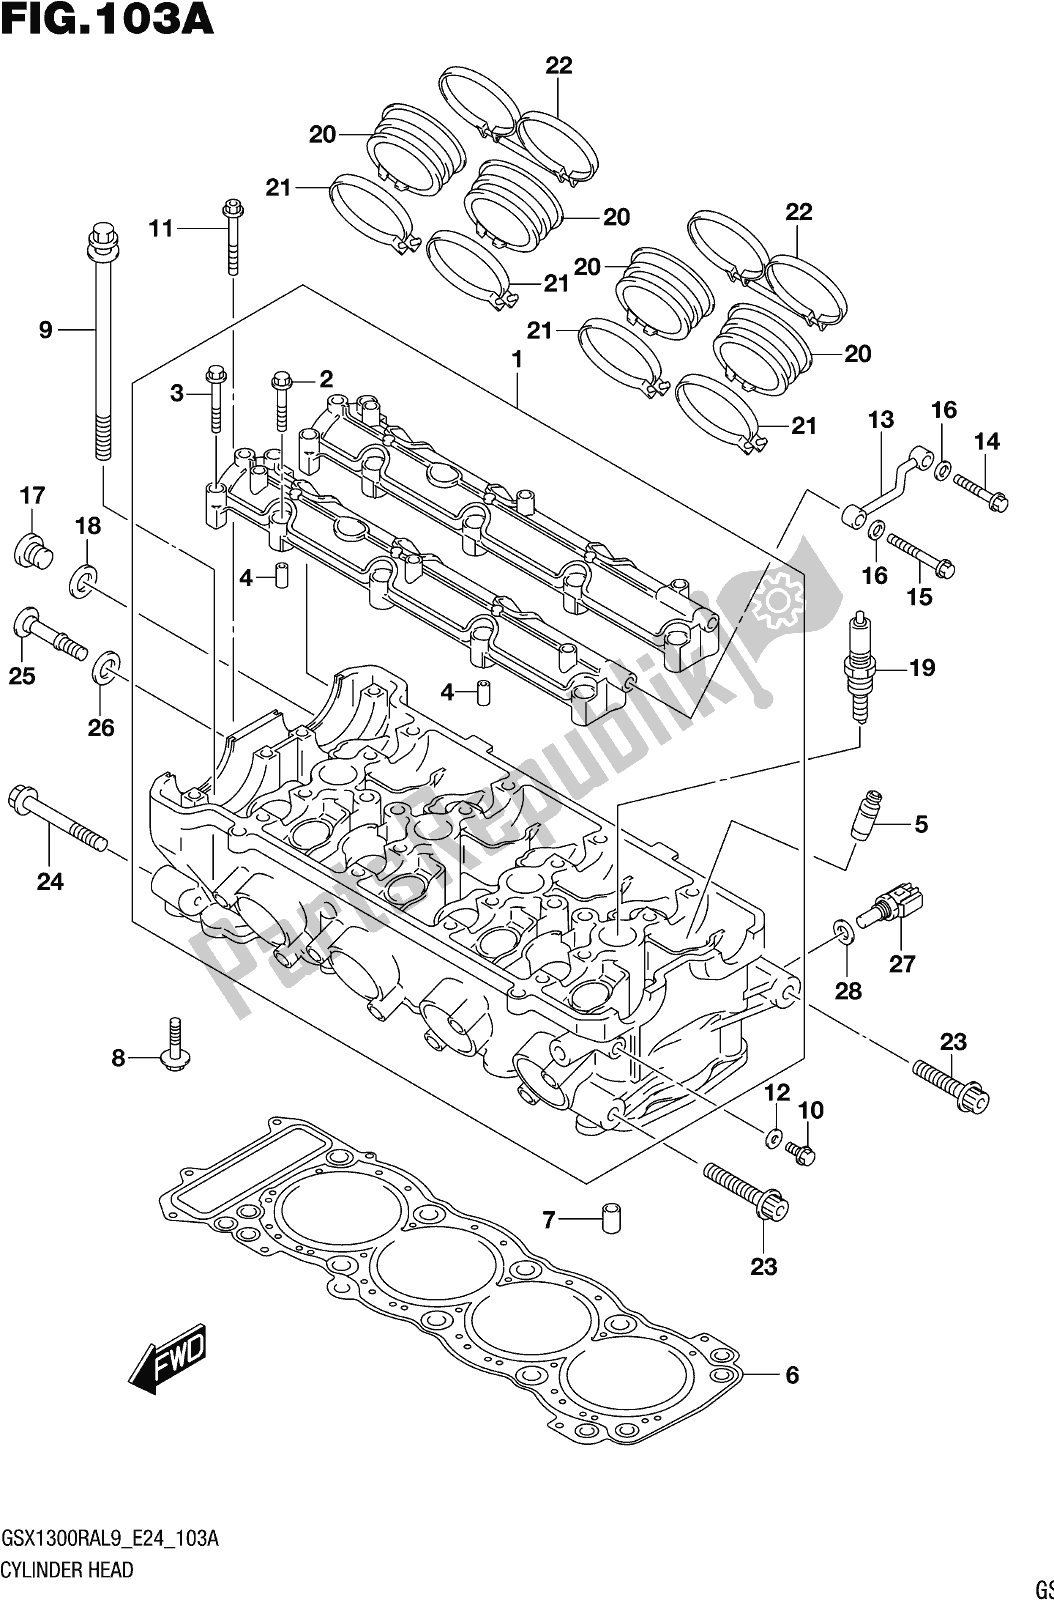 Alle onderdelen voor de Fig. 103a Cylinder Head van de Suzuki GSX 1300 RA 2019